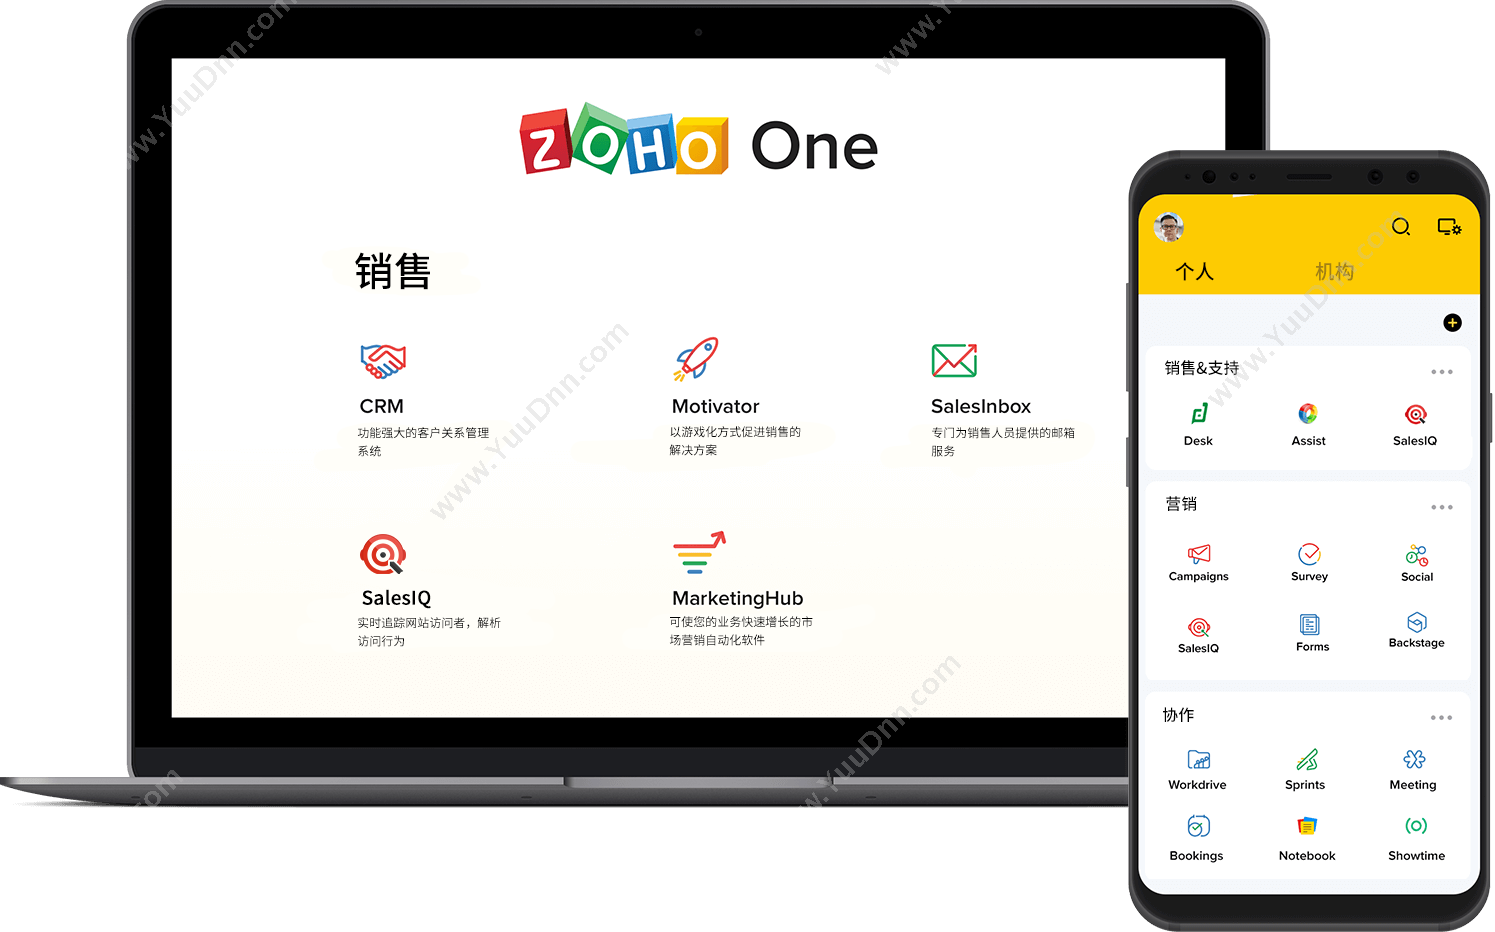 卓豪（中国）技术有限公司 Zoho One企业应用套件 客户管理